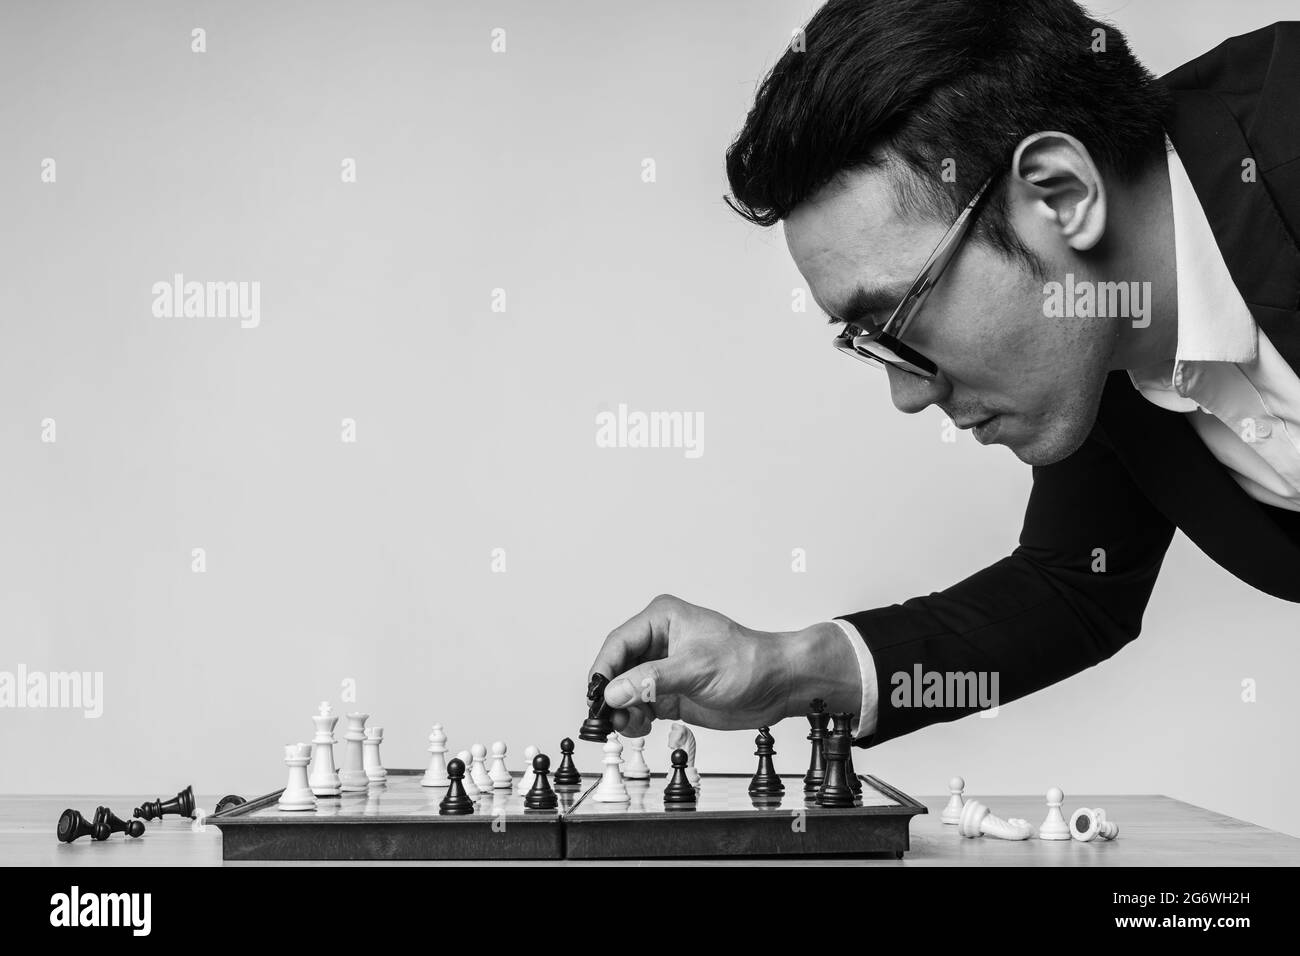 Der asiatische Geschäftsmann denkt über seinen nächsten Schritt auf dem Schachbrett nach Stockfoto